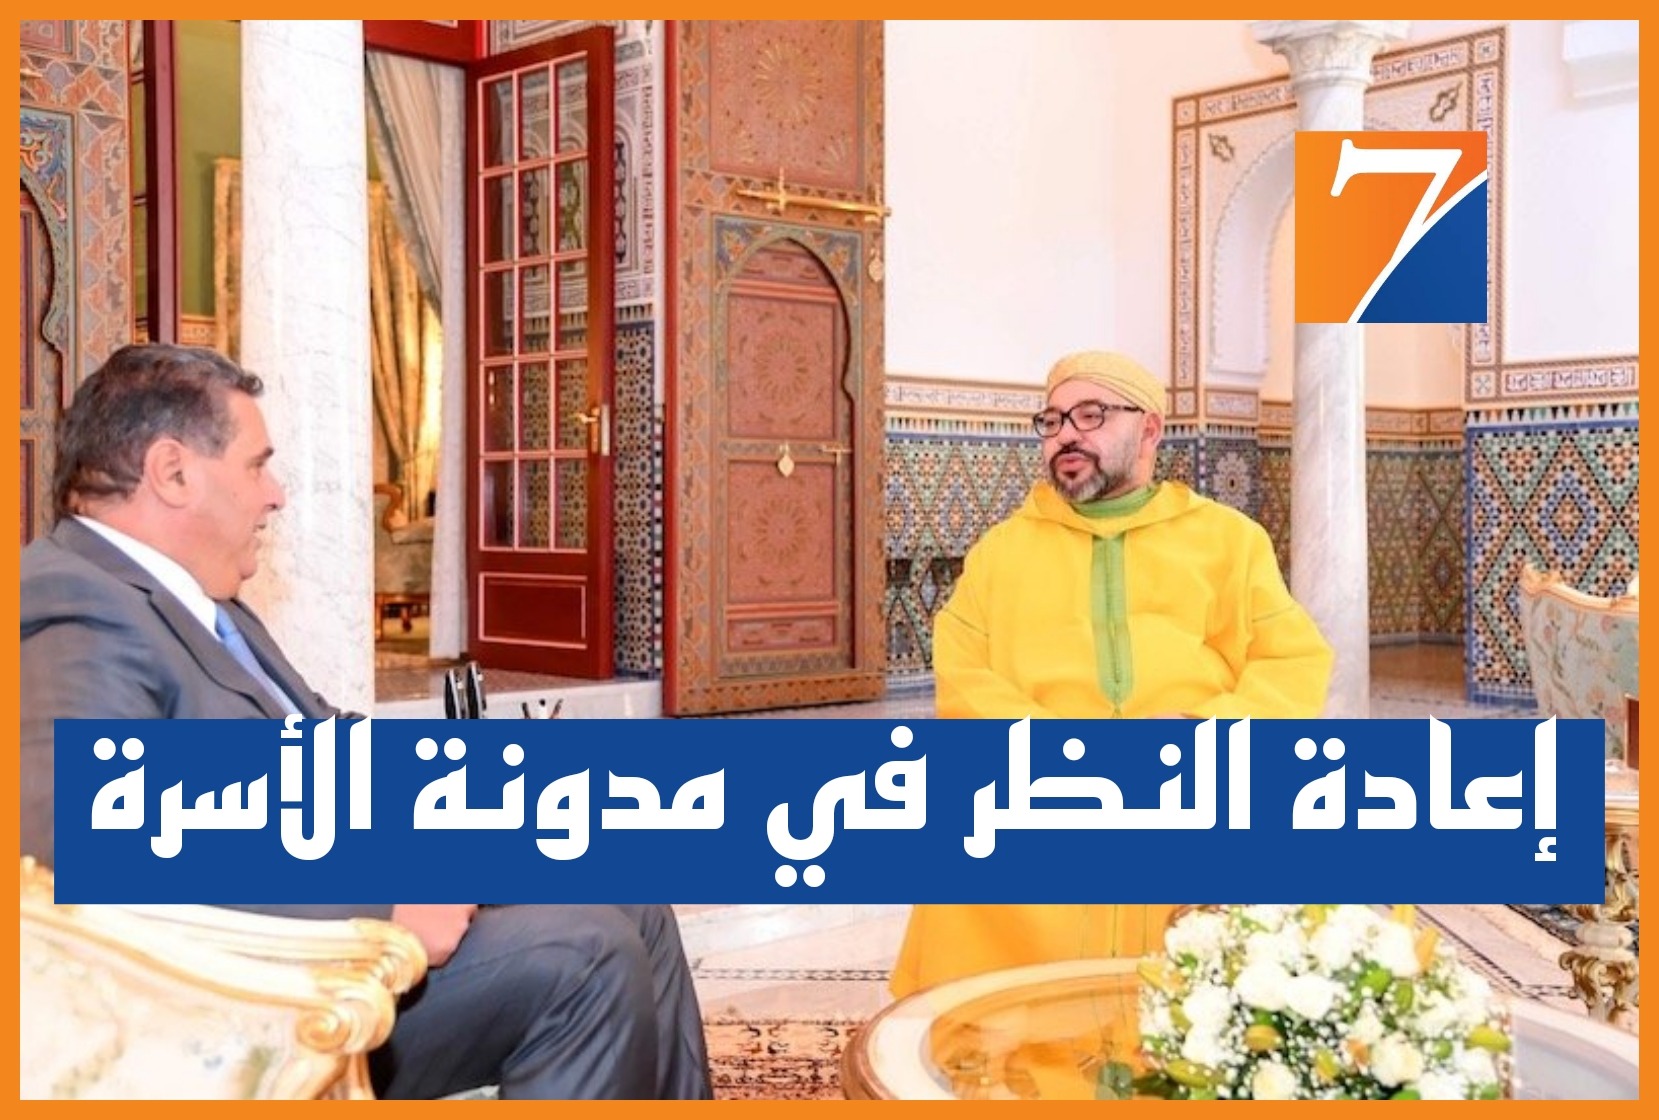 الملك محمد السادس يوجه رسالة إلى رئيس الحكومة لإعادة النظر في مدونة الأسرة